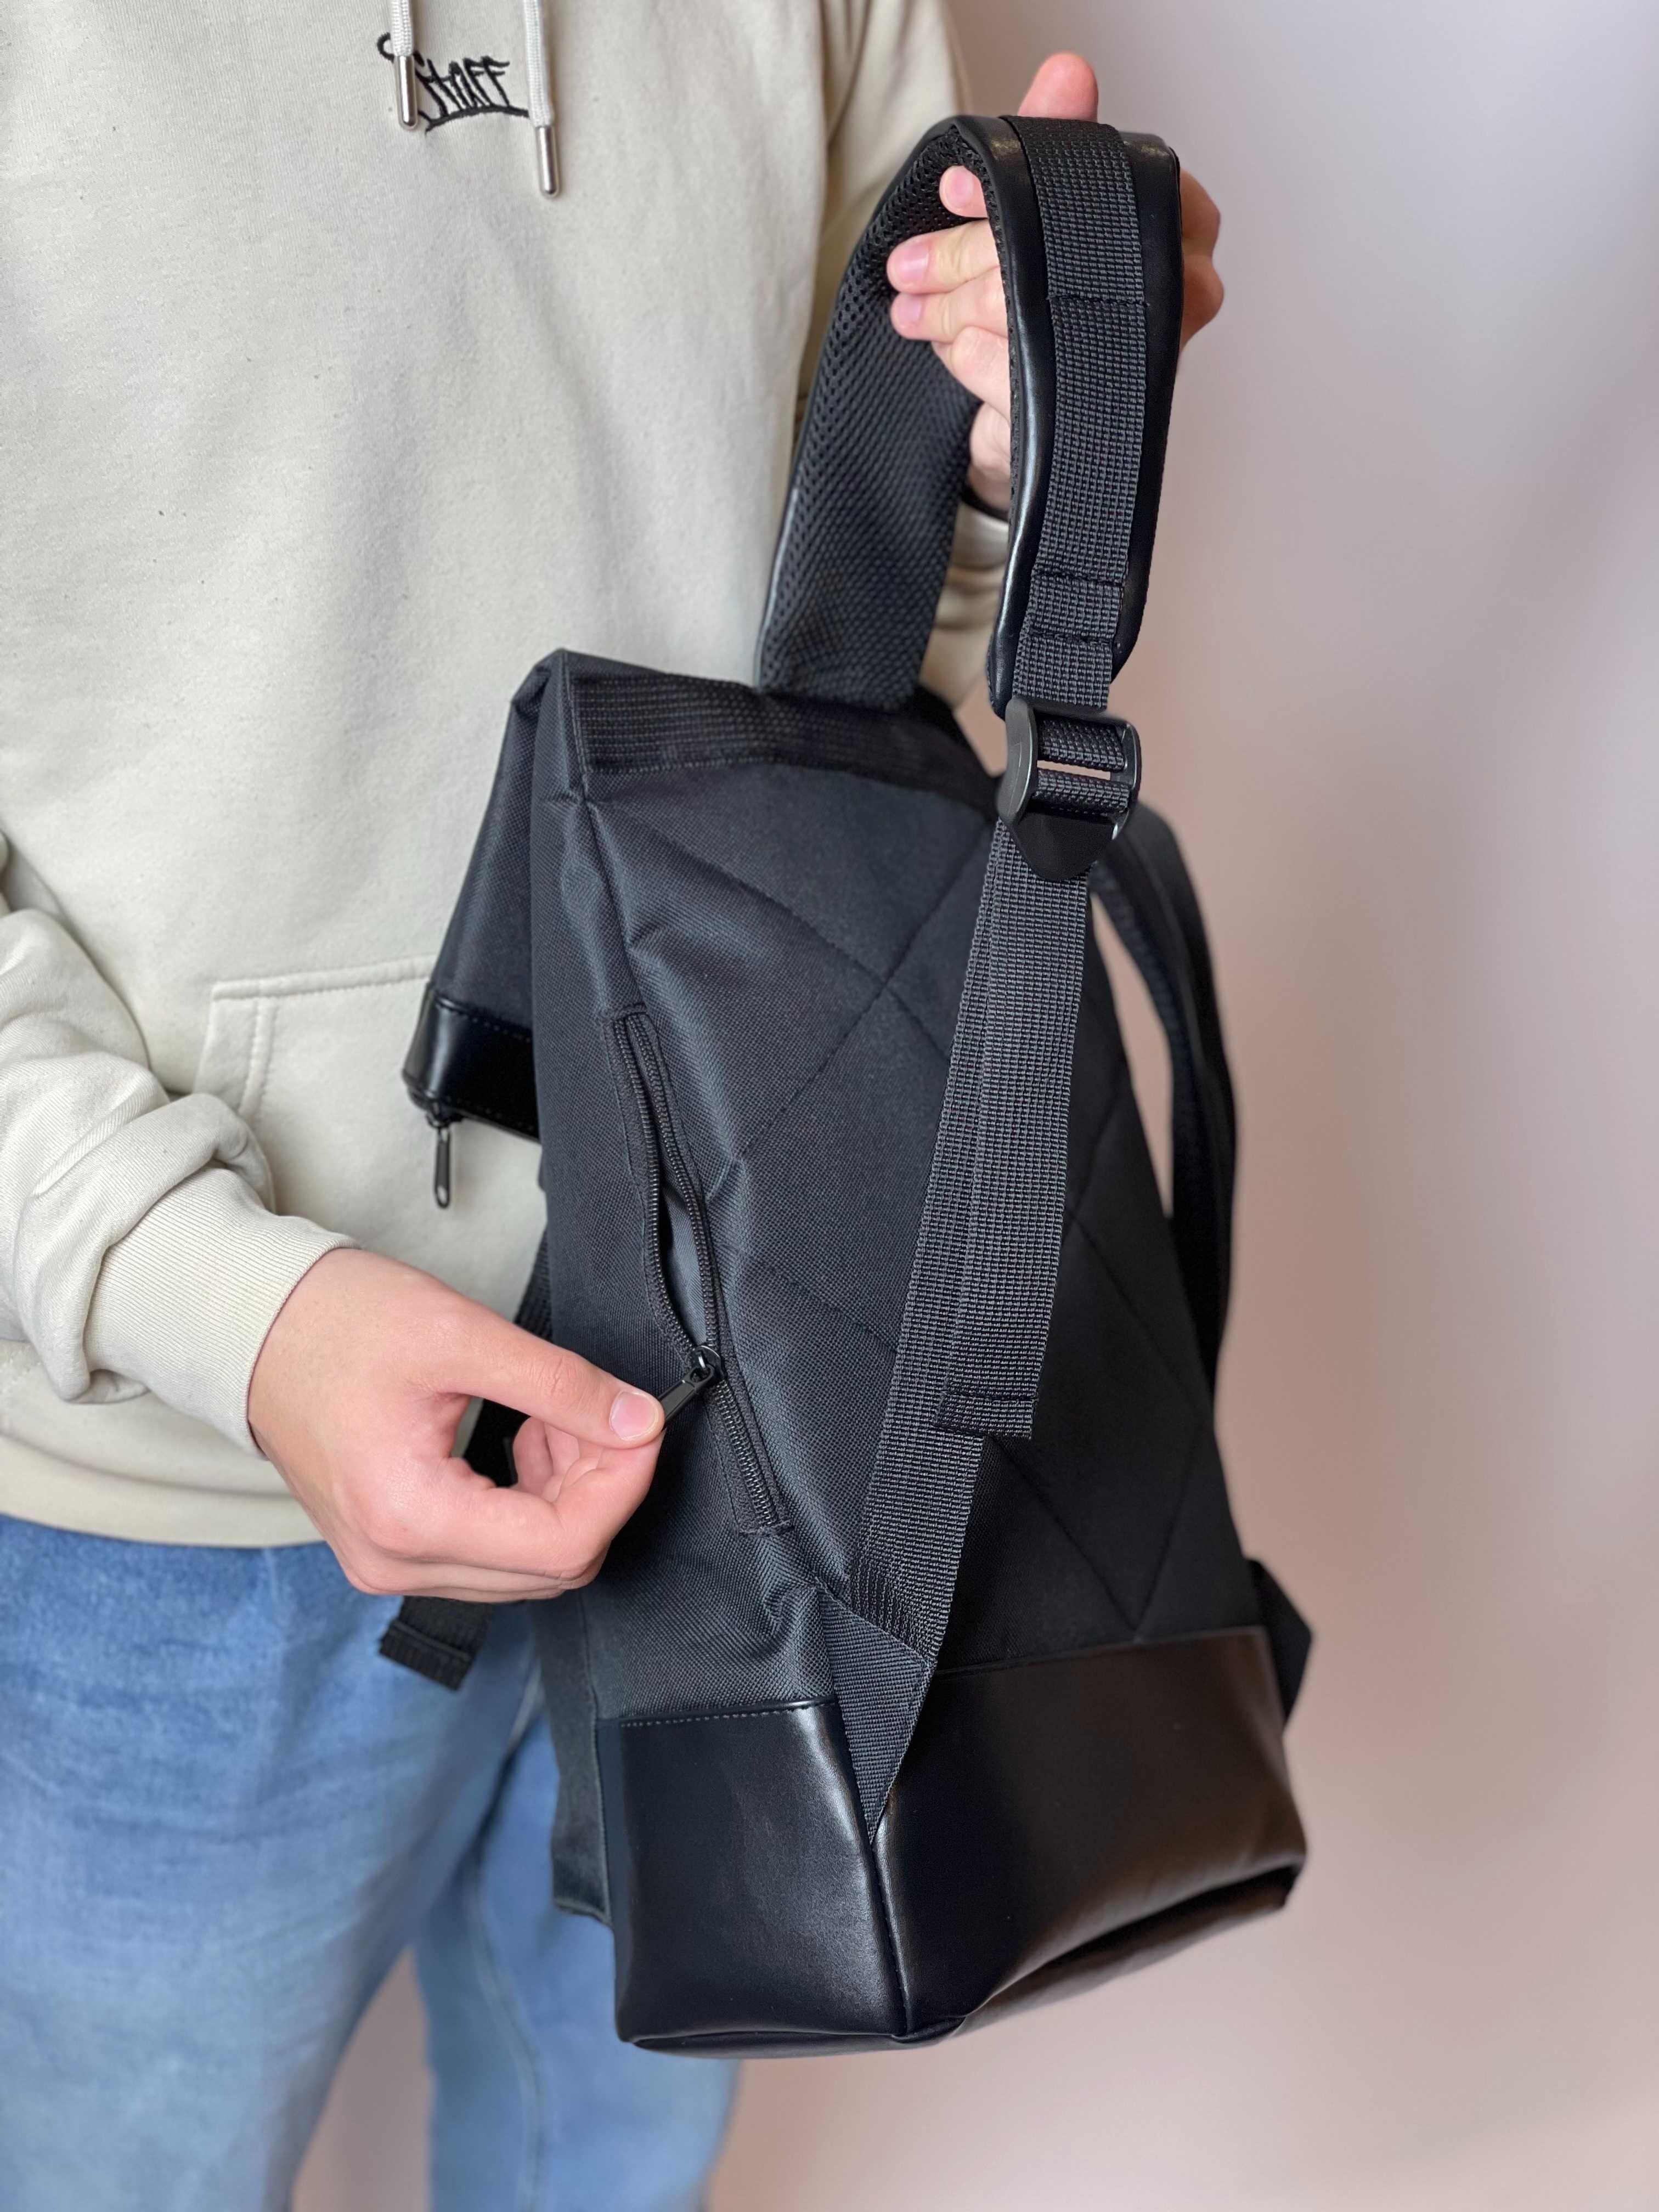 Унисекс рюкзак Rolltop | Мужской, детский, школьный рюкзак Роллтоп